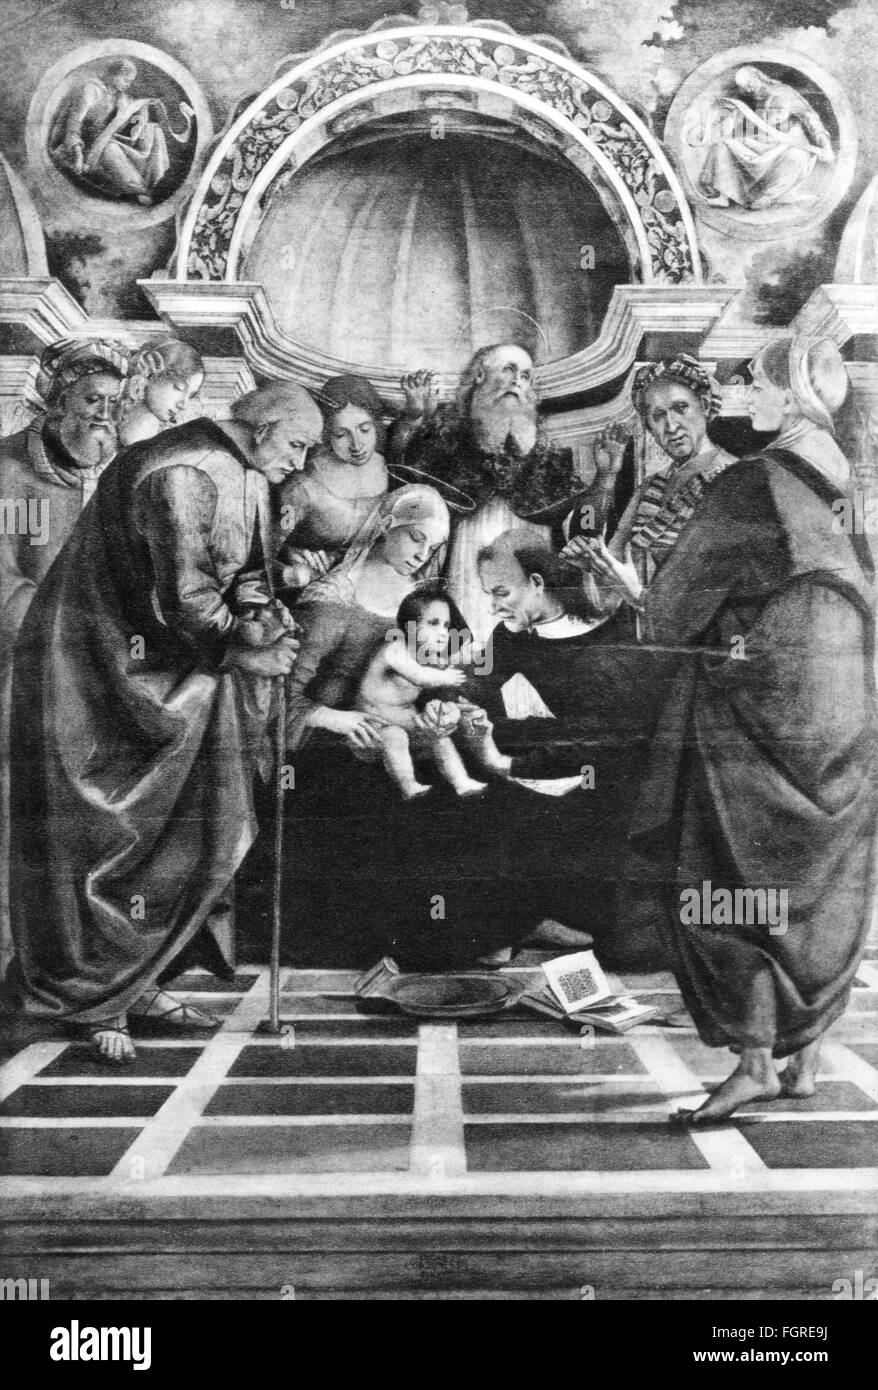 Beaux-arts, Signorelli, Luca (1441 - 1523), peinture, 'la circoncision', vers 1490 - 1491, huile sur panneau, 259 x 180 cm, National Gallery, Londres, droits additionnels-Clearences-non disponible Banque D'Images